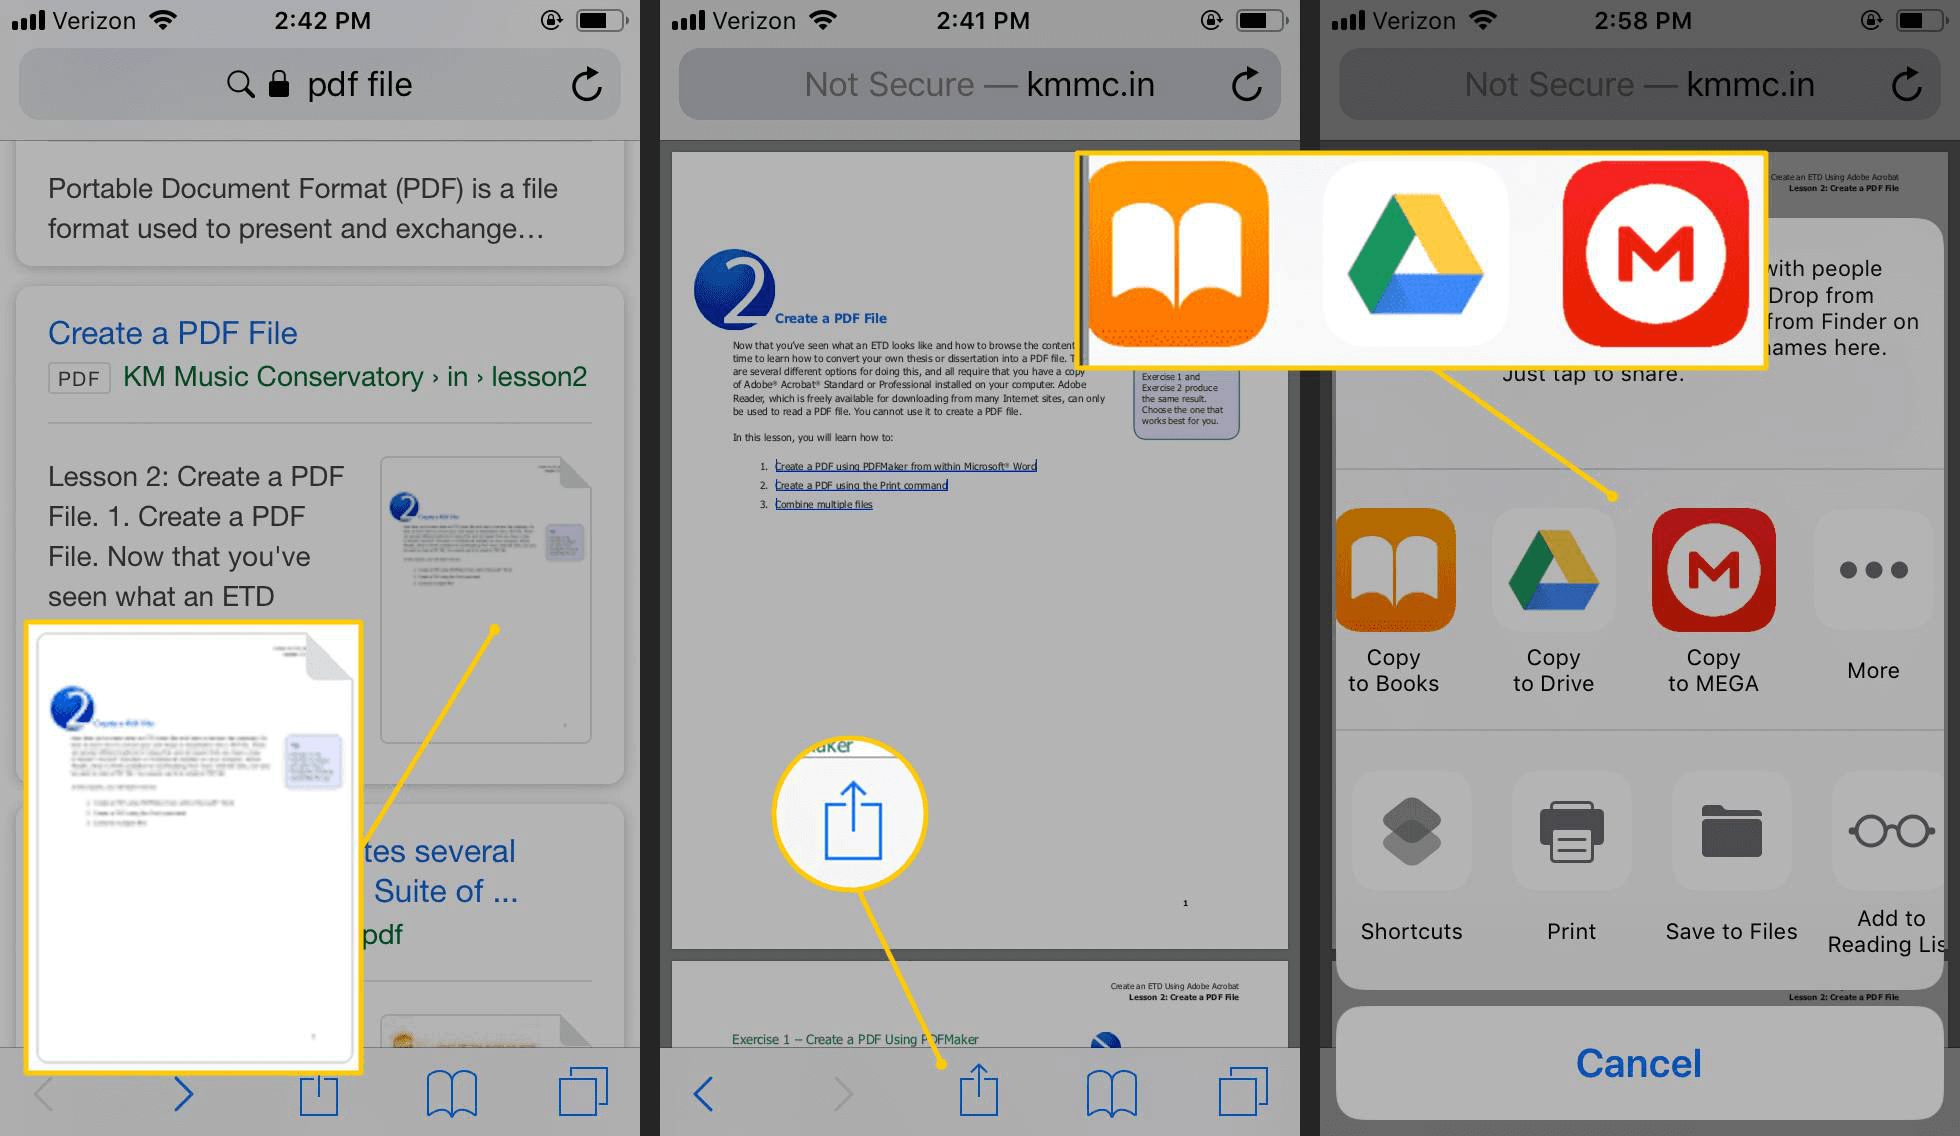 come salvare i file pdf nelle altre app su iPhone